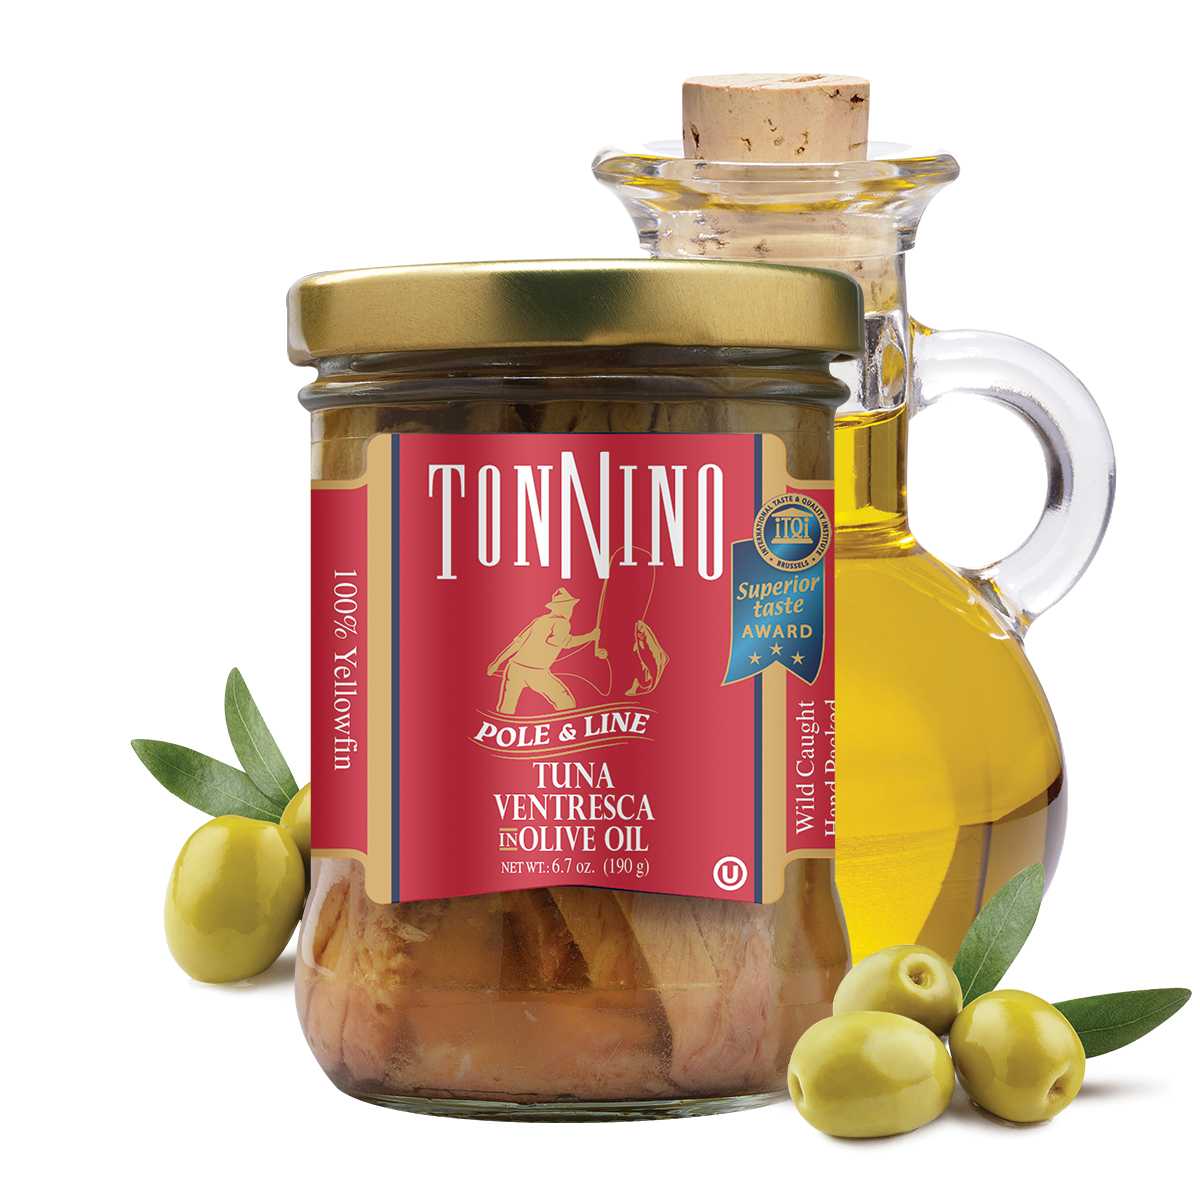 Tonnino Pole & Line Ventresca Yellowfin Tuna In Olive Oil, 6.7 oz